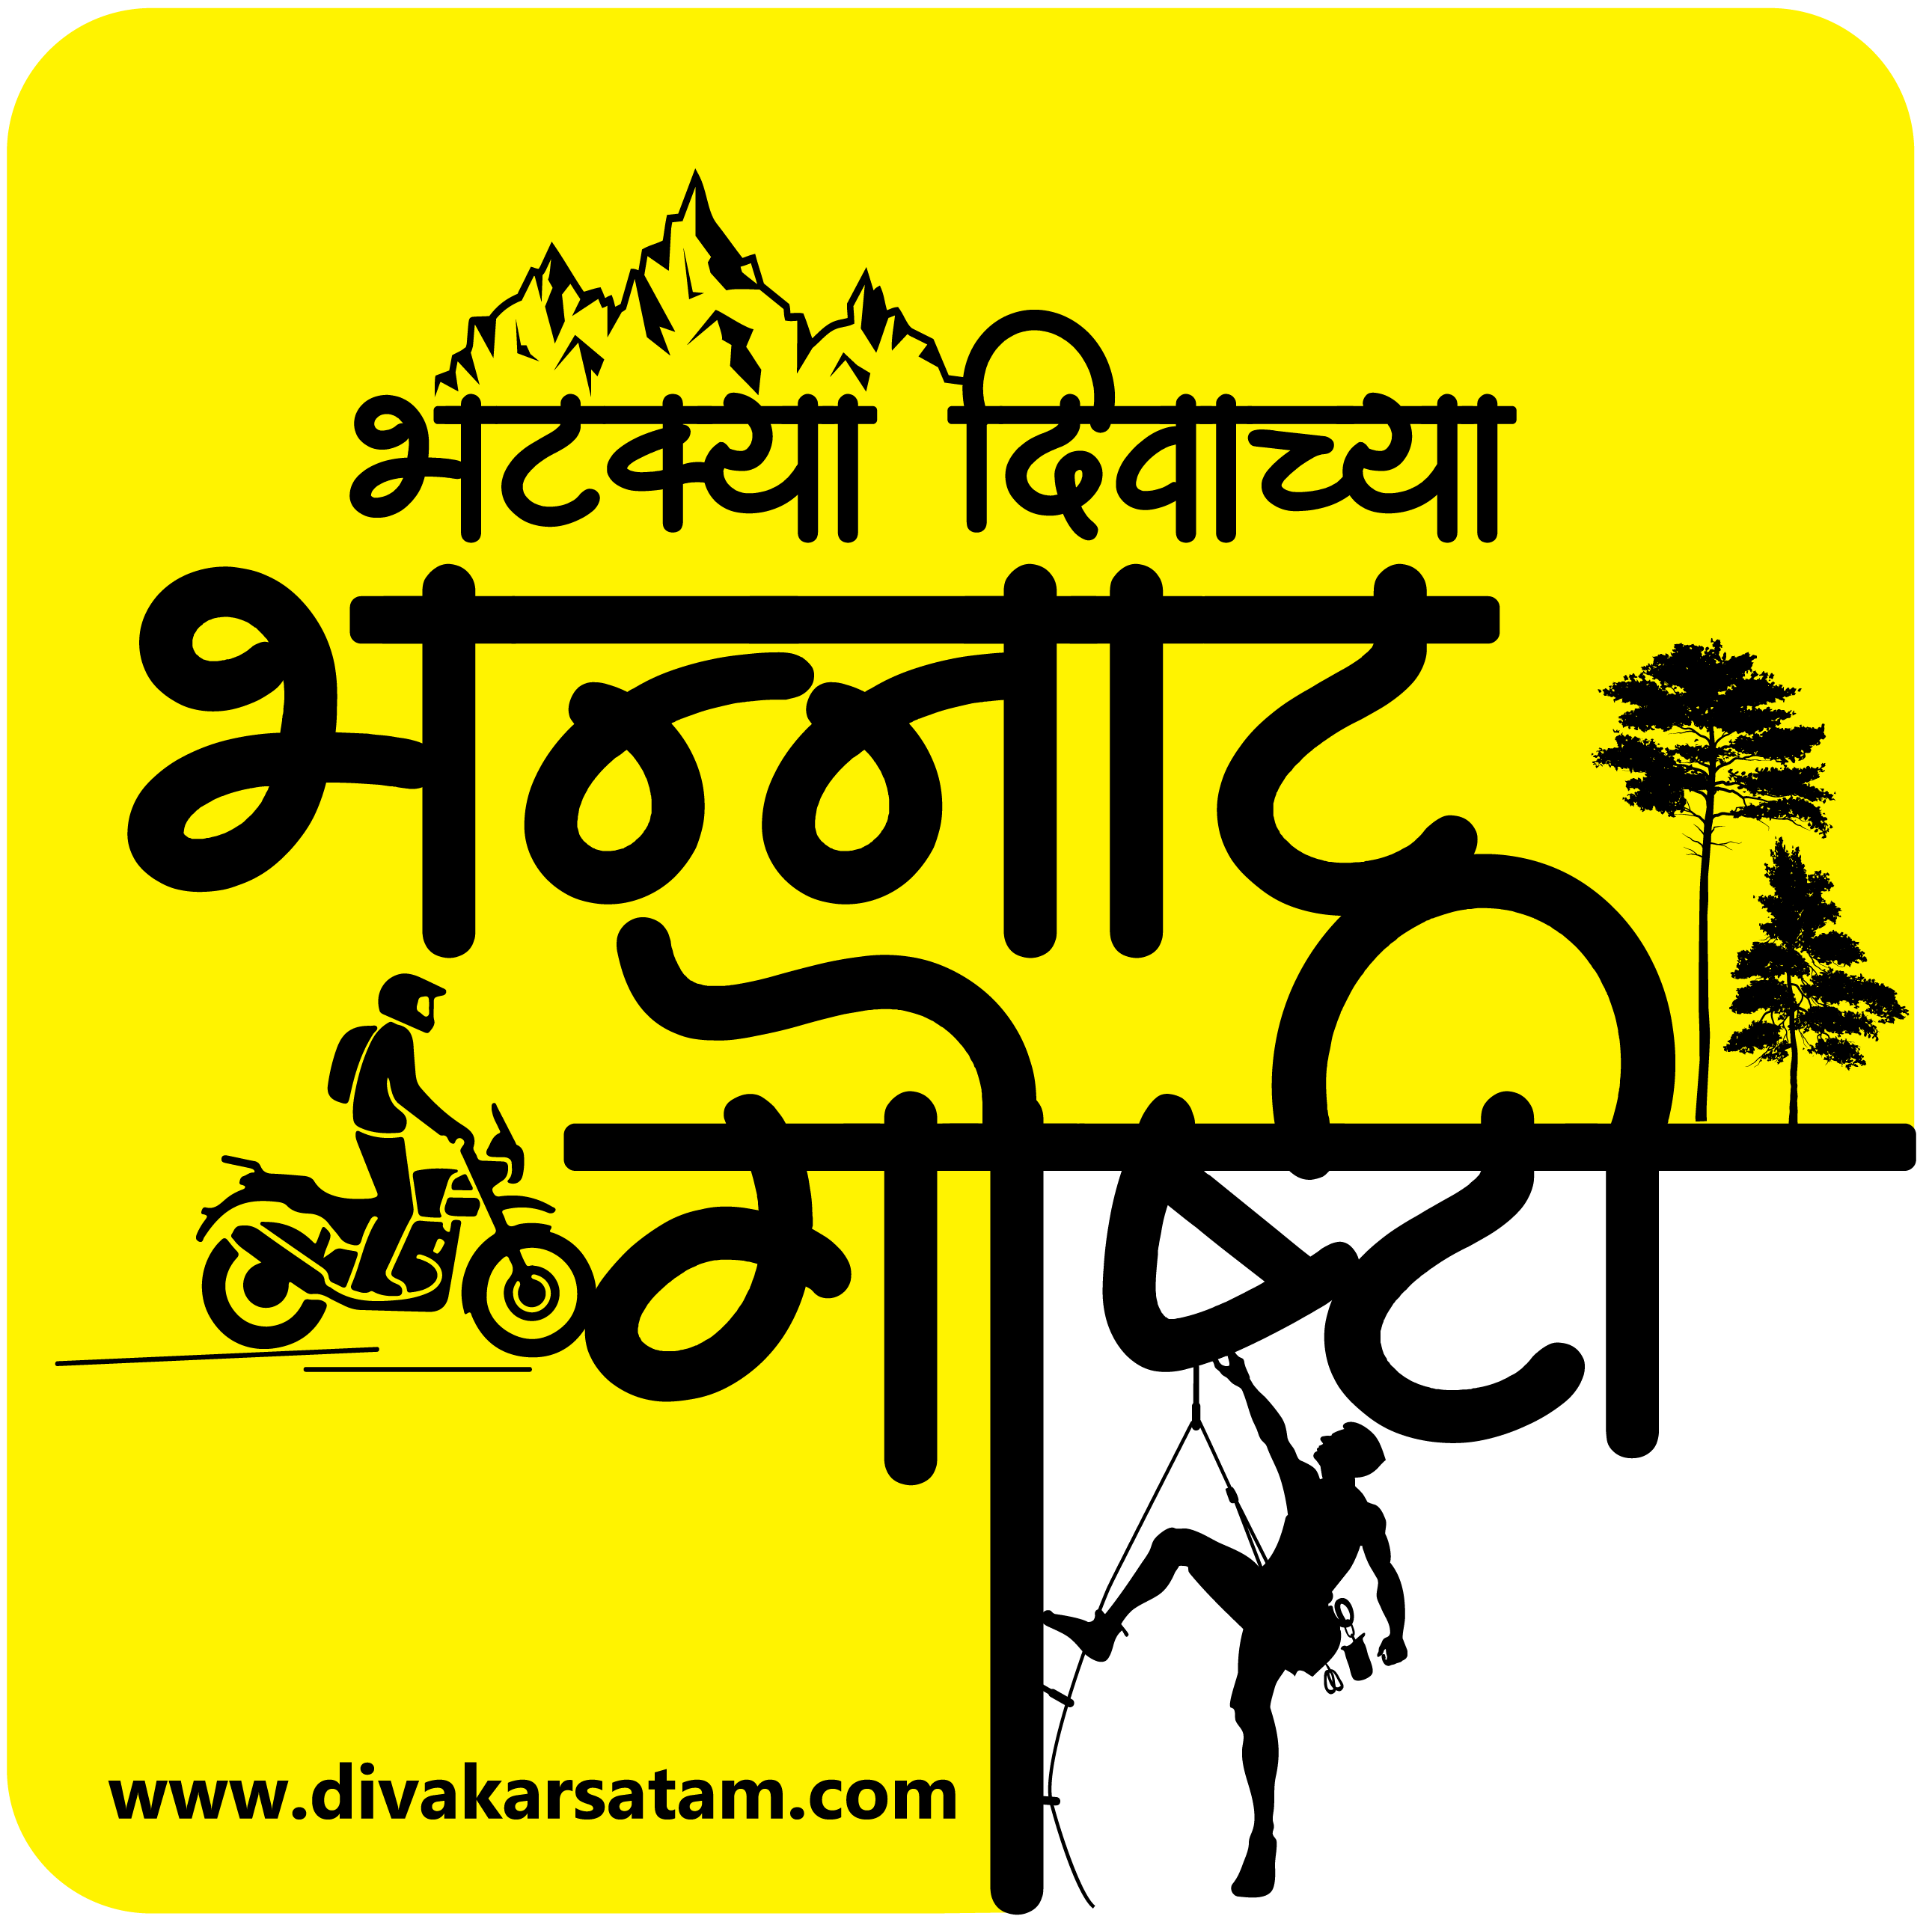 Divakar Satam Logo